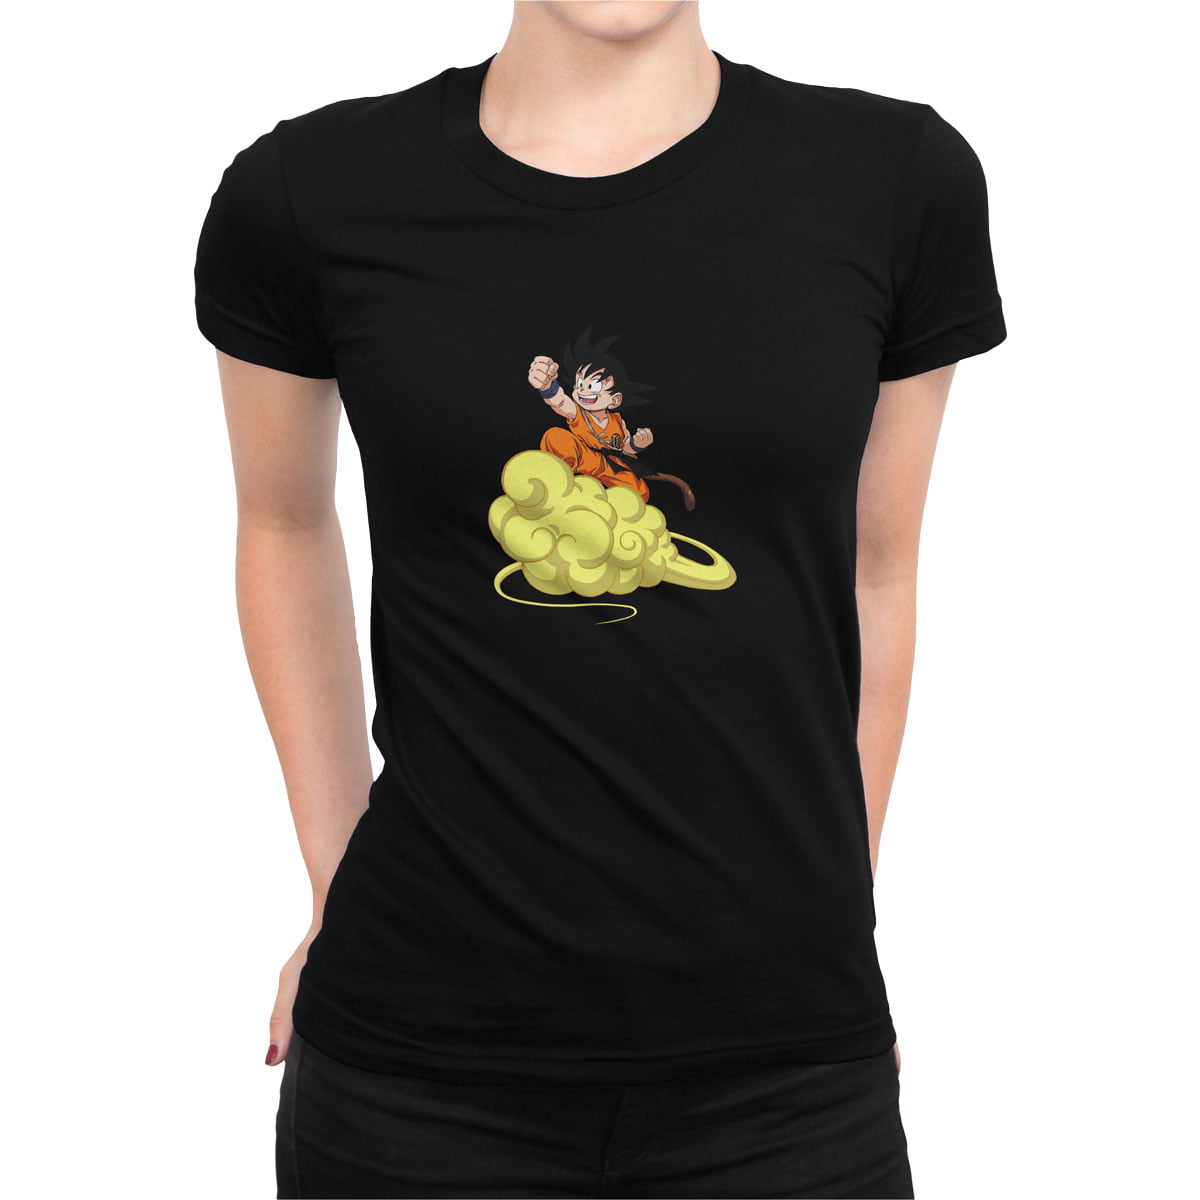 Dragonball 2 tshirt s kadin 1 - dragon ball goku no4 baskılı kadın t-shirt - figurex